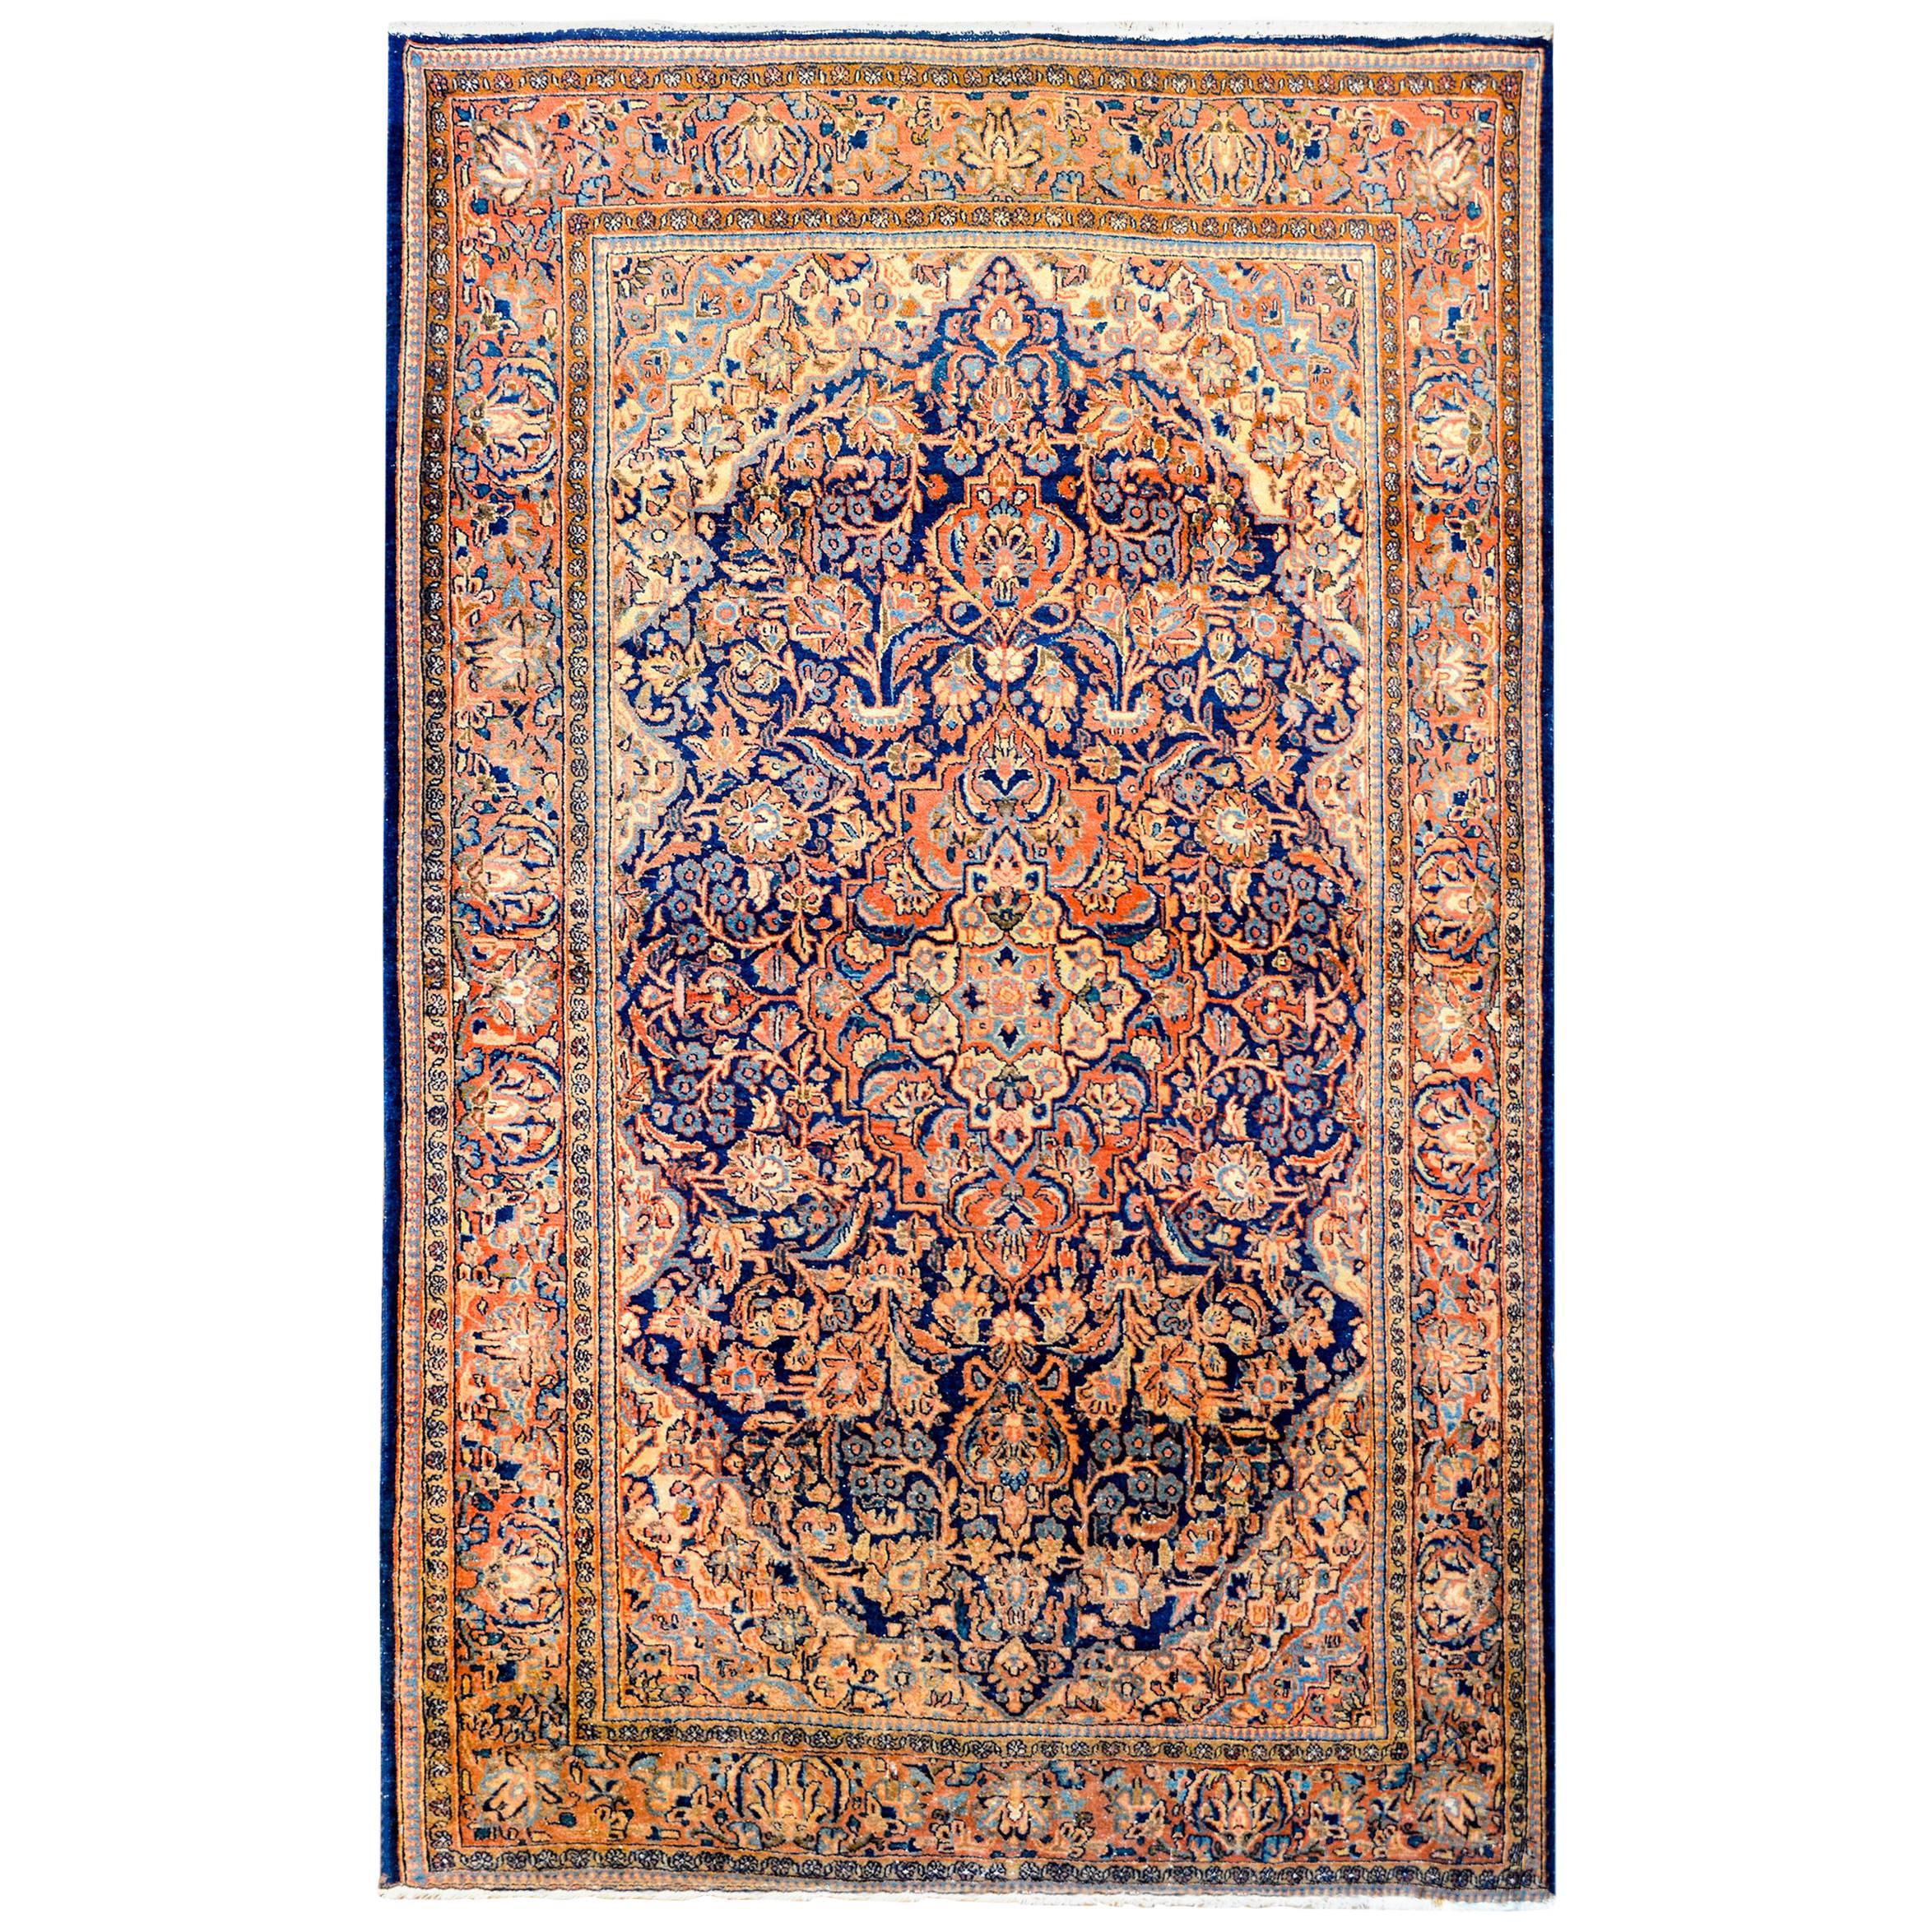 Kashan-Teppich des frühen 20. Jahrhunderts, Wunderschön